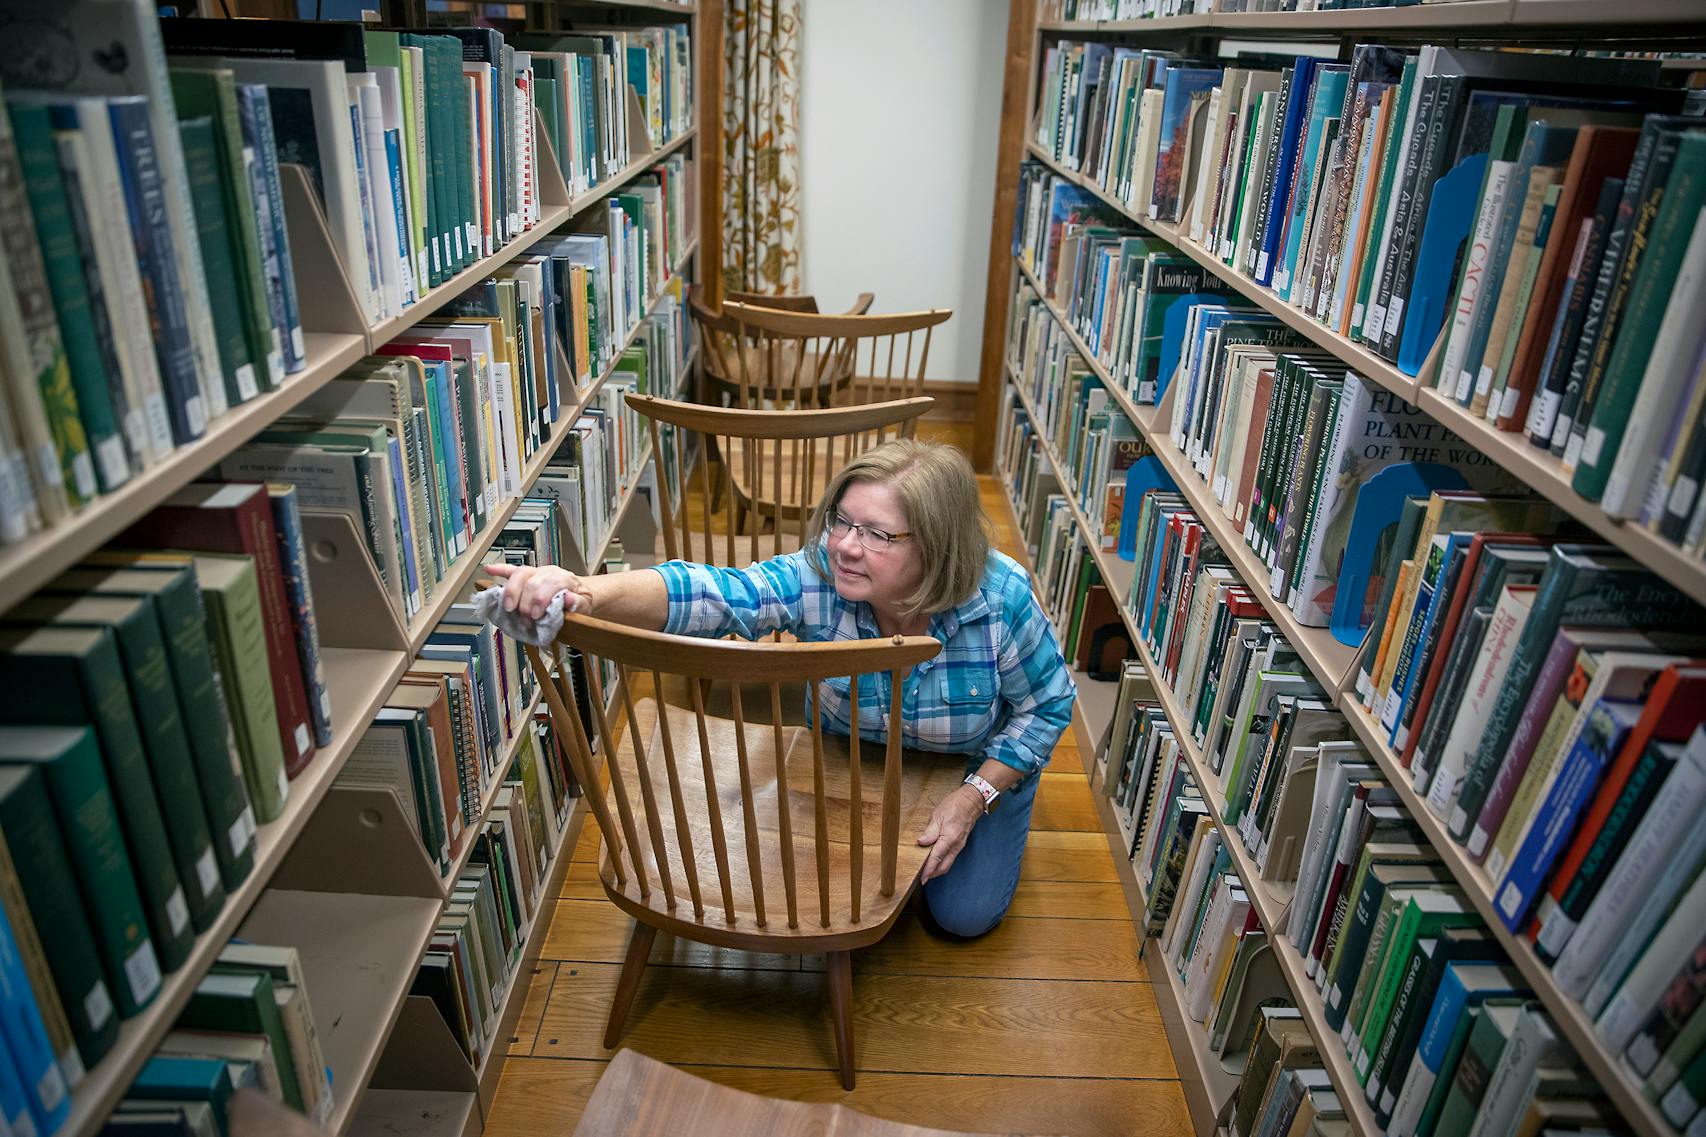 Volunteer Pamela Layton helped clean several chairs in the Arboretum's reading spaces.